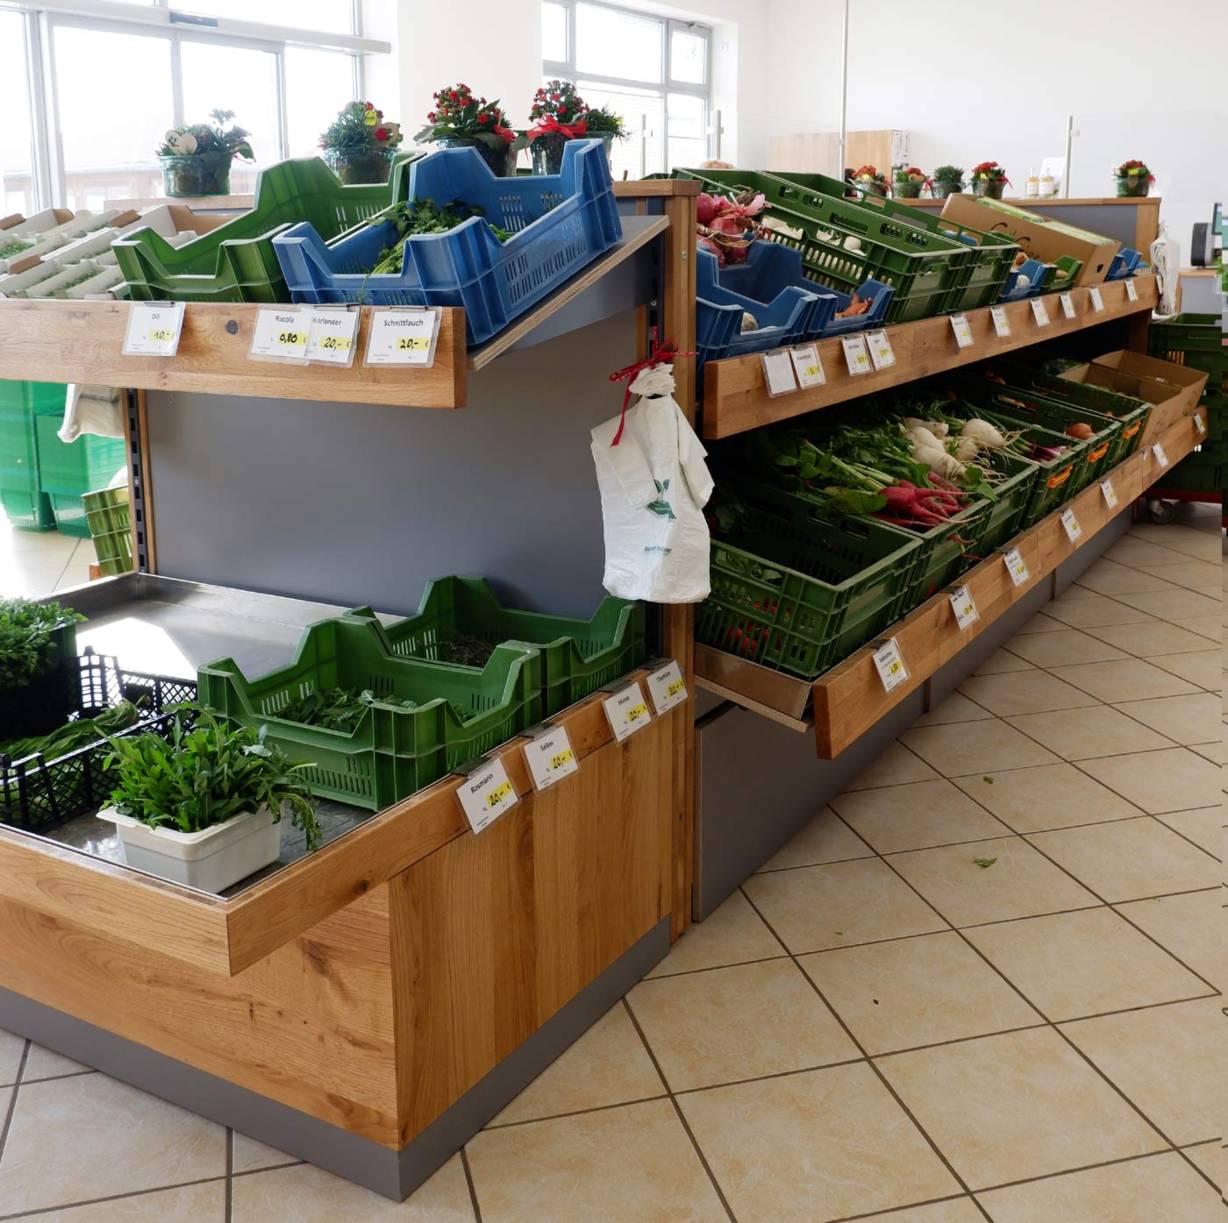 Mobili Ladenbau liefert Obst Gemüse Gondelregale  Modell M14, mit Kräuterwanne.